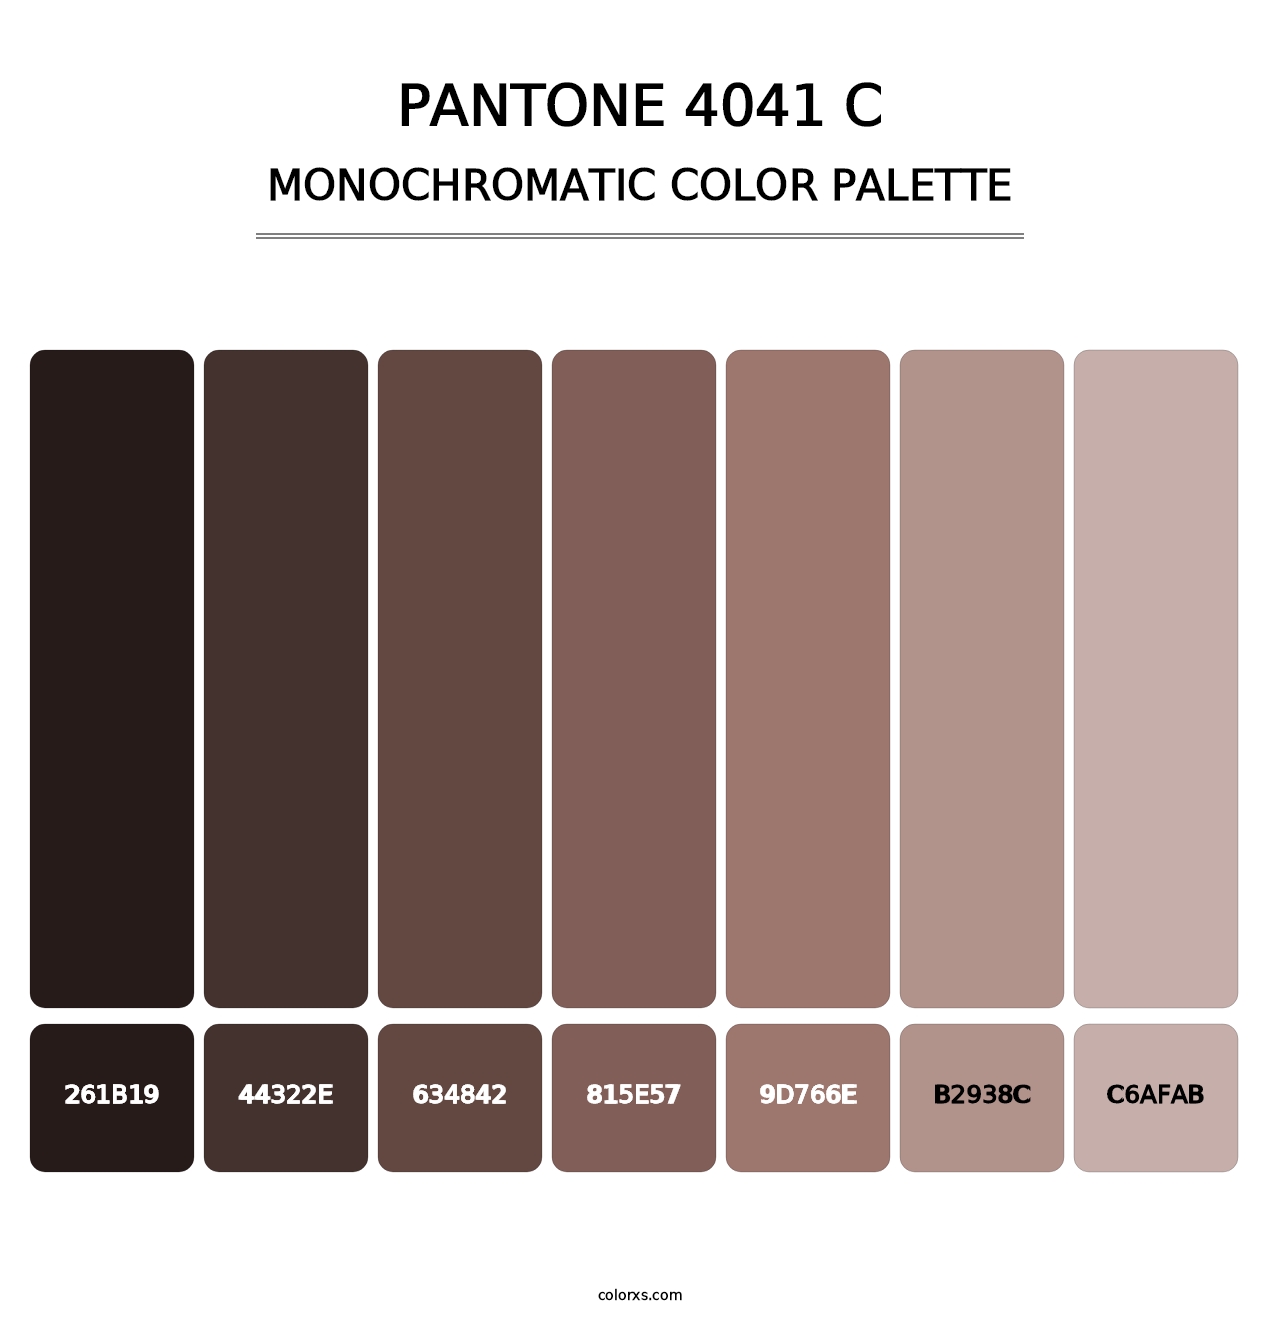 PANTONE 4041 C - Monochromatic Color Palette